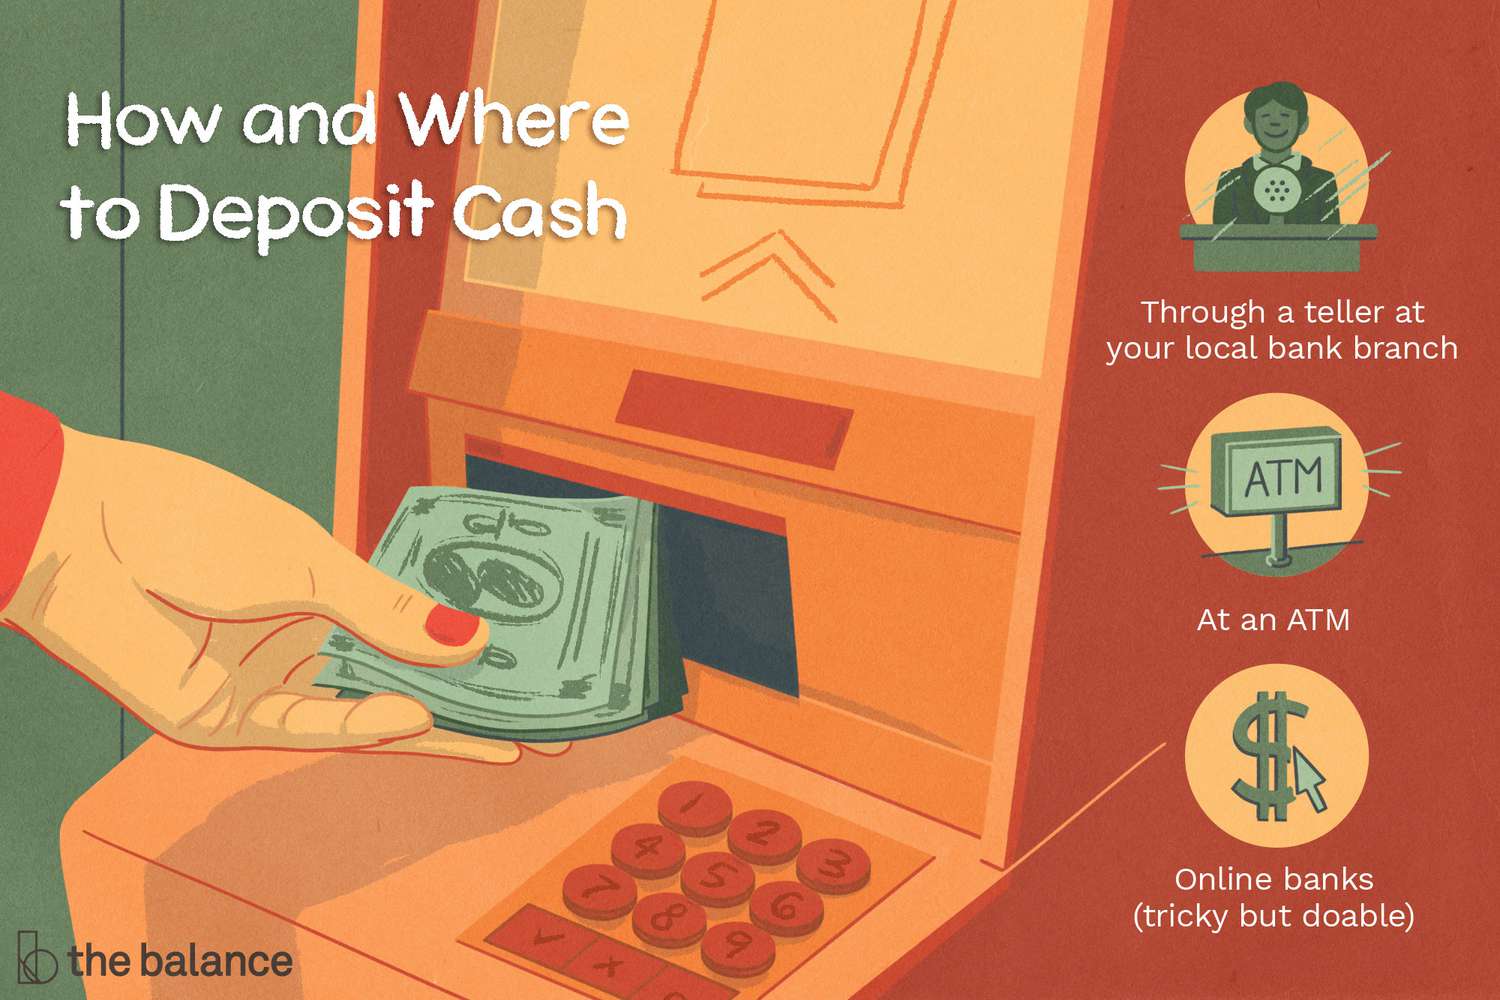 手钱插入ATM与图标出现银行出纳员,ATM机,和一个美元符号,代表了一个标题,写着:怎么没存款现金。”class=